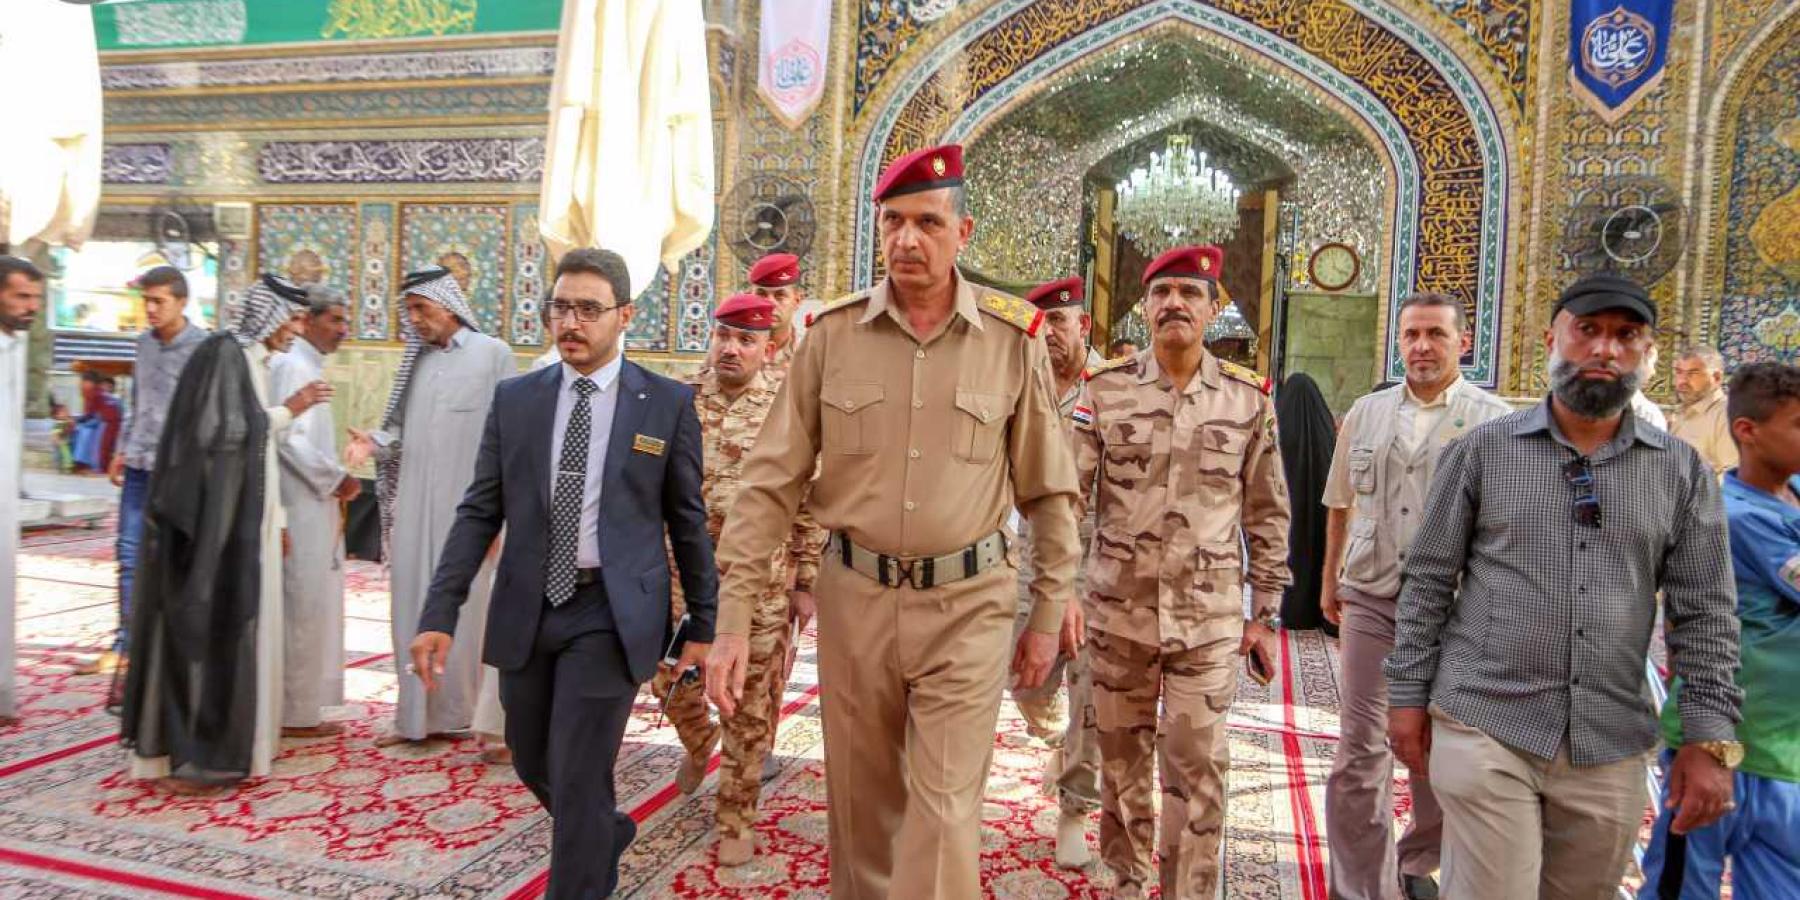 رئيس أركان الجيش العراقي يتشرف بزيارة مرقد الإمام علي (عليه السلام)